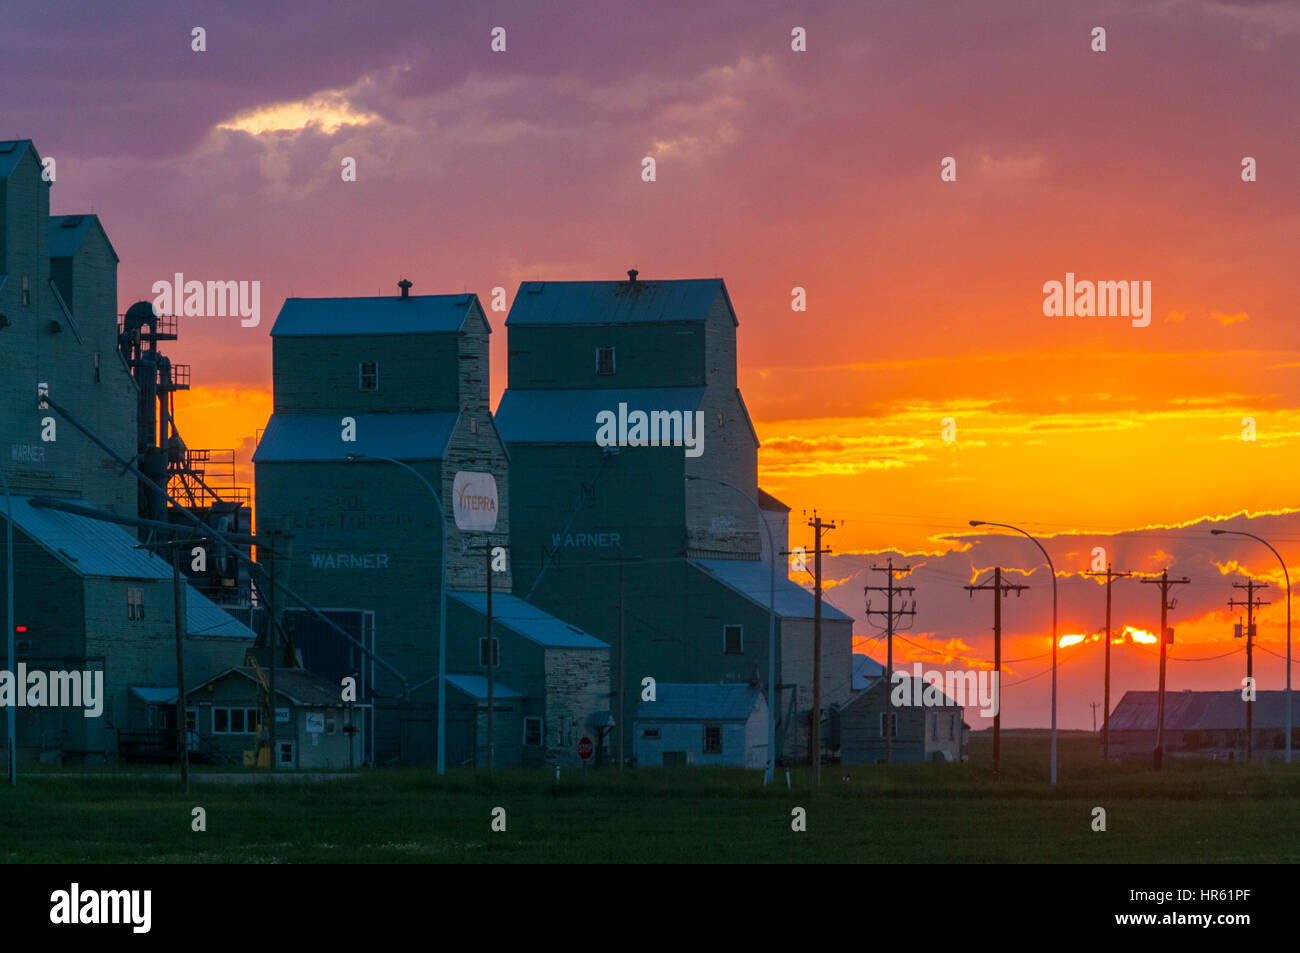 Grain elevators at sunset, Warner, Alberta, Canada Stock Photo